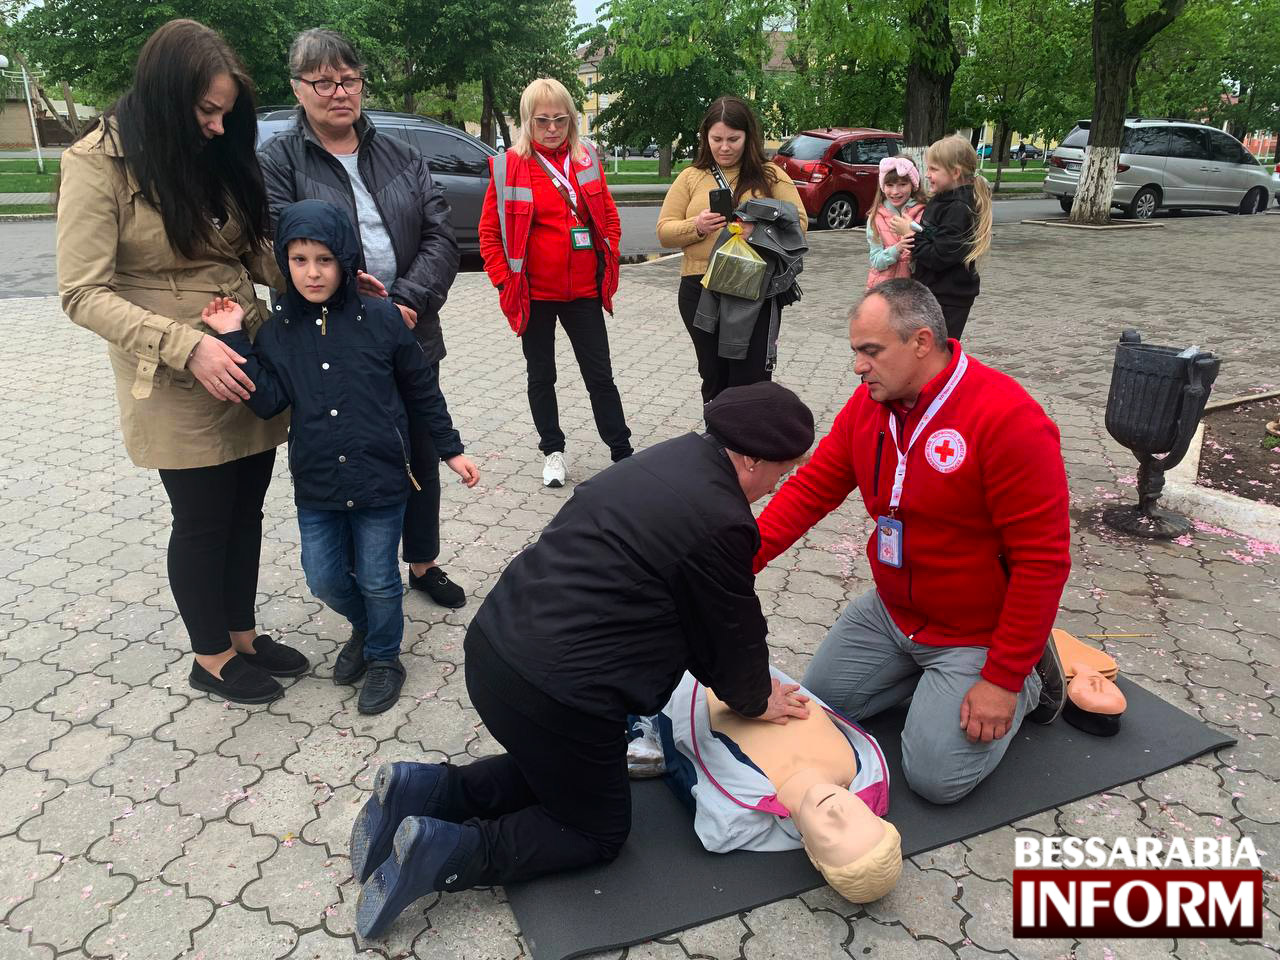 Награждение и мастер-класс по первой помощи на свежем воздухе - на днях в Измаиле состоялось полезное мероприятие от "Красного Креста"